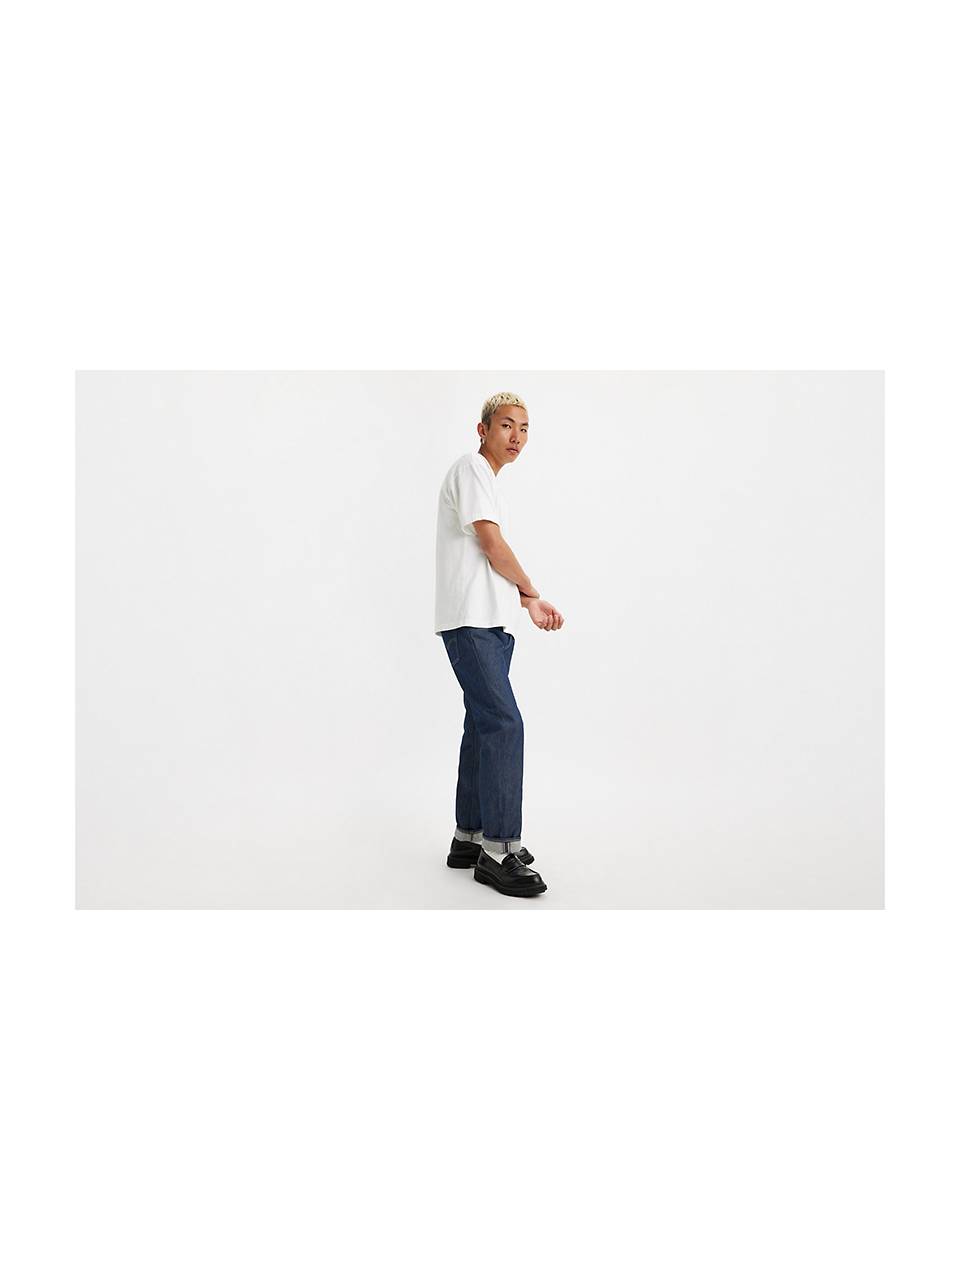 Men's 501® Jeans - Shop 501® Original Fit Jeans | Levi's® US